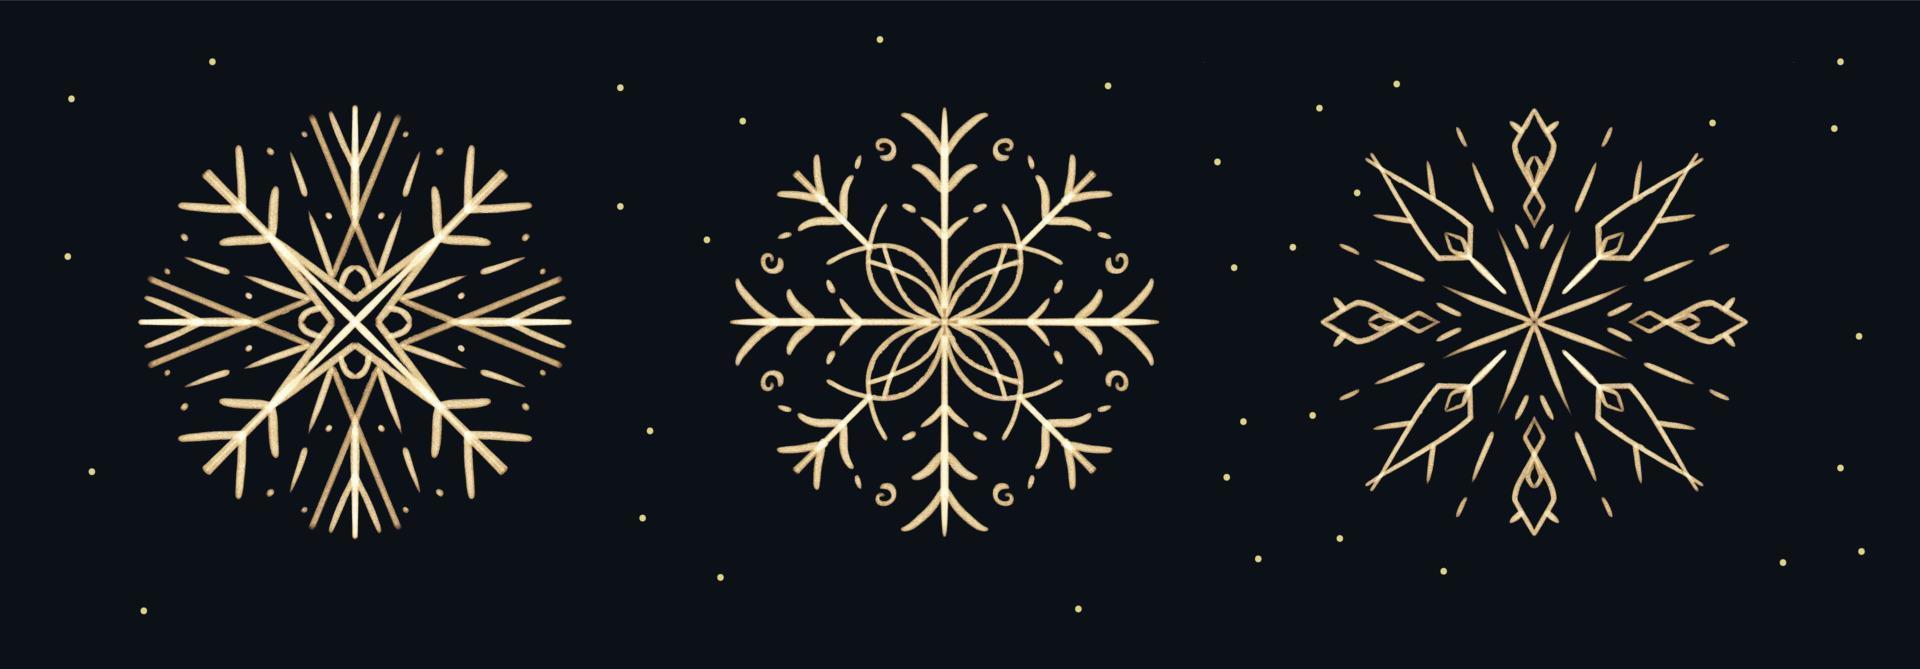 conjunto de copos de nieve dorados dibujados a mano con pinceladas para el diseño navideño. vacaciones de invierno elementos aislados vector